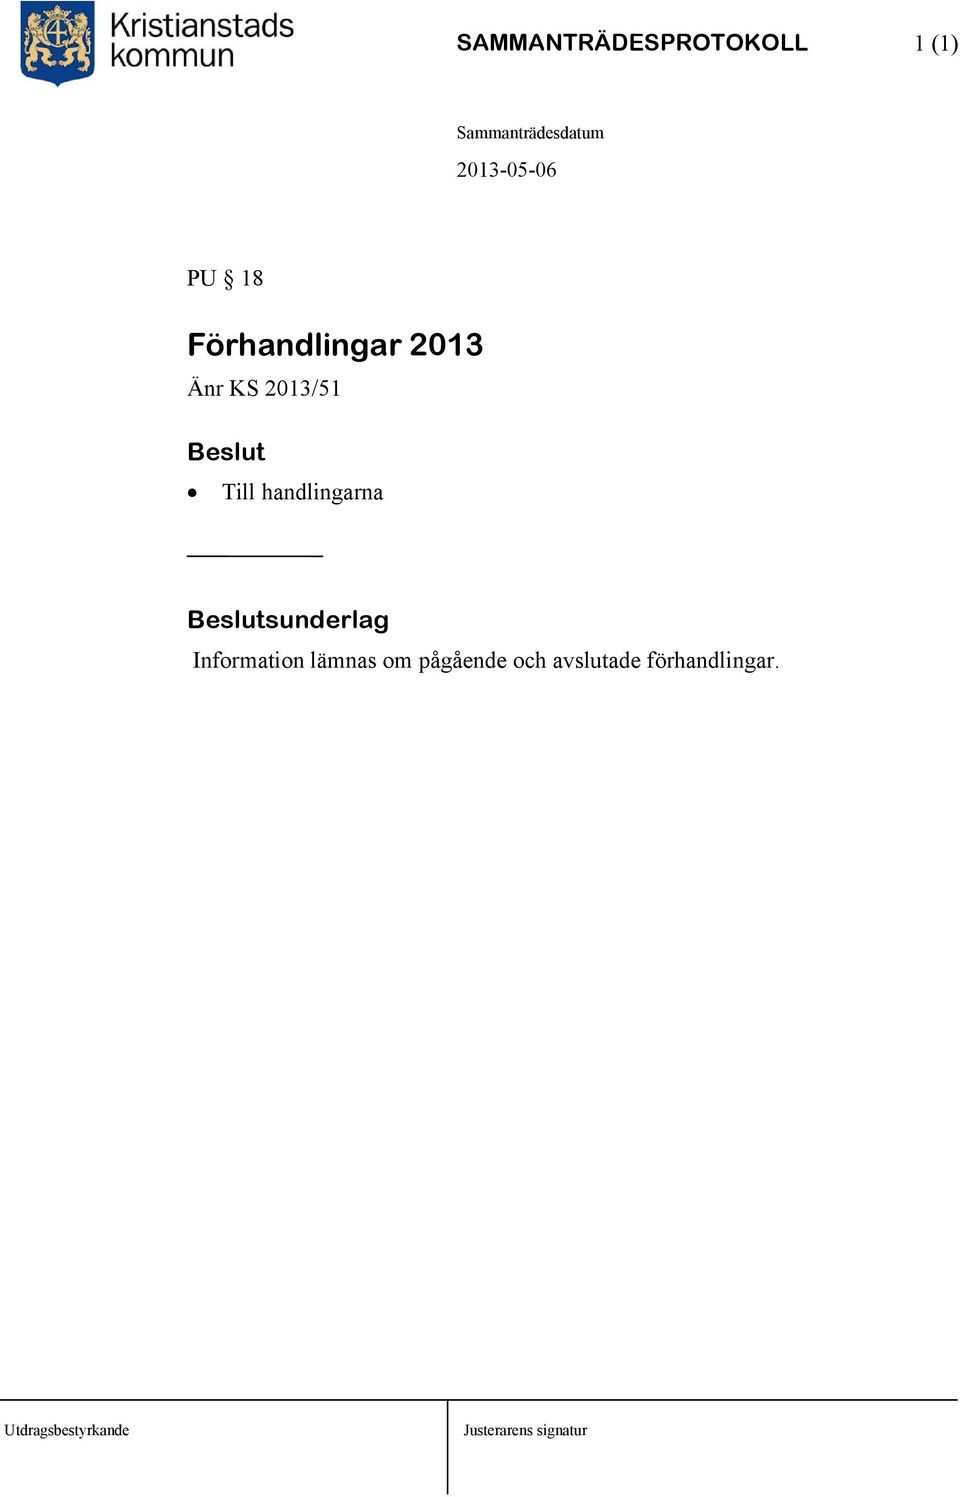 2013/51 Till handlingarna Information